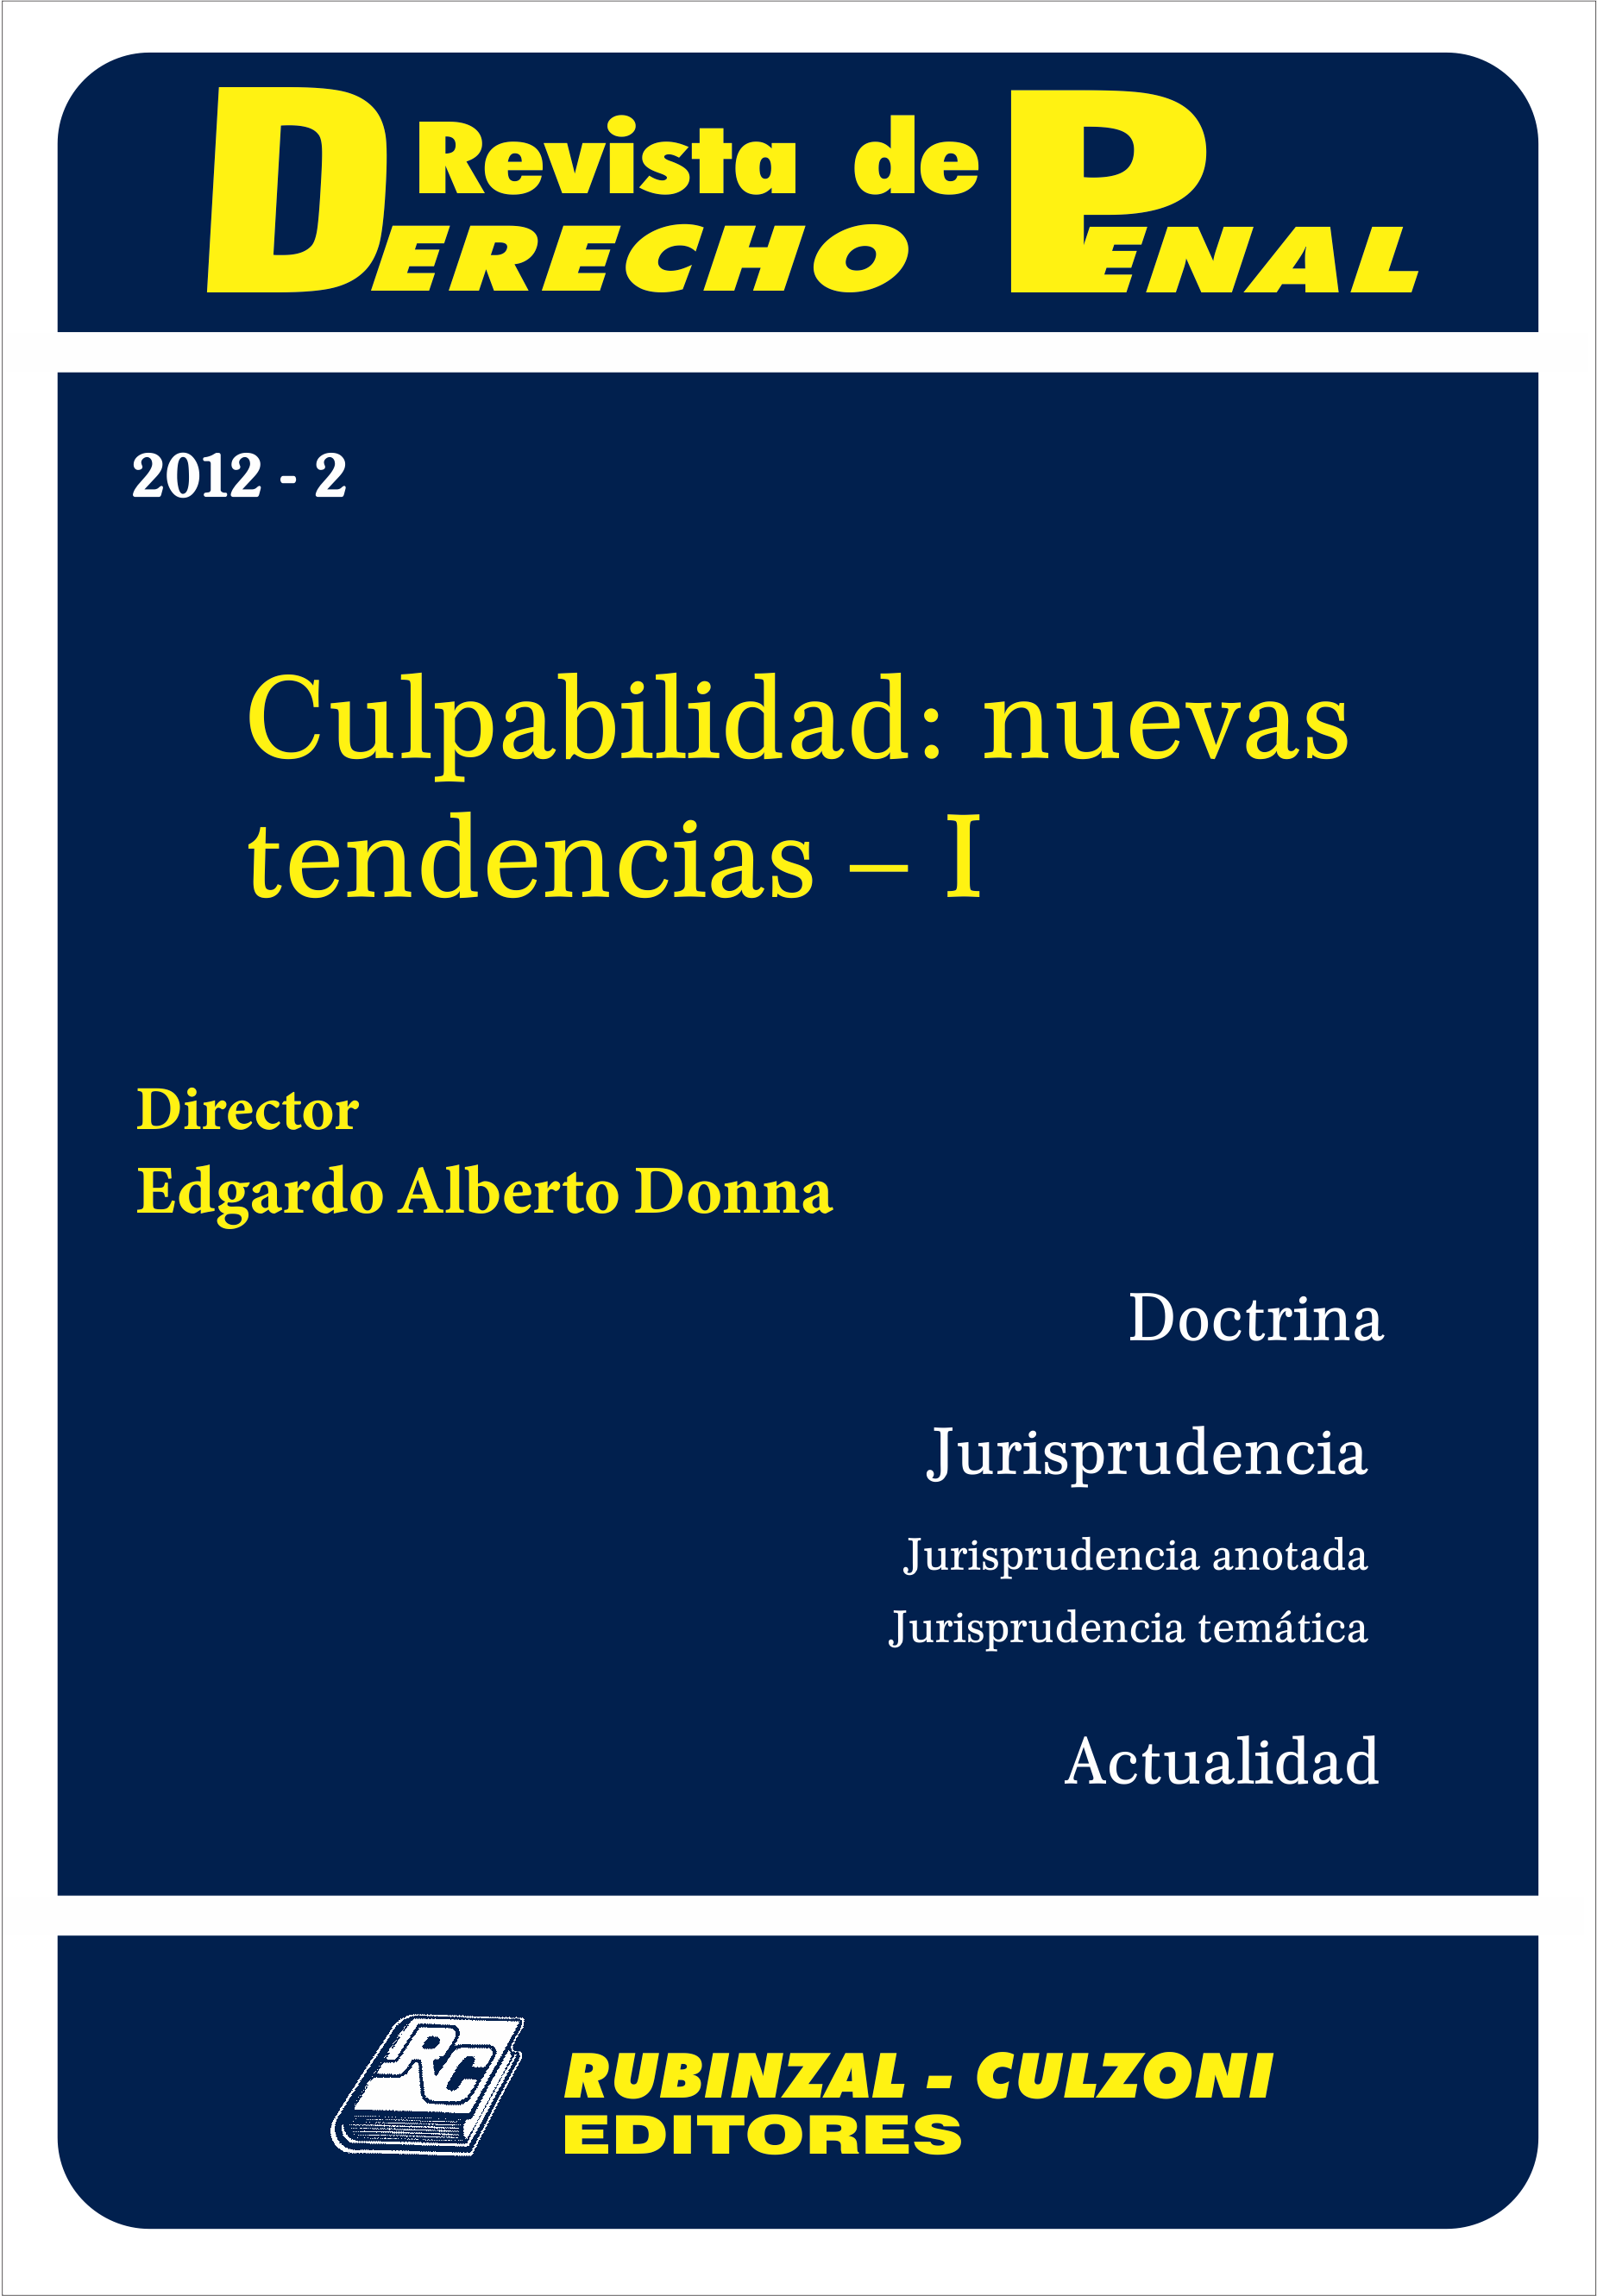 Revista de Derecho Penal - Culpabilidad: nuevas tendencias - I.